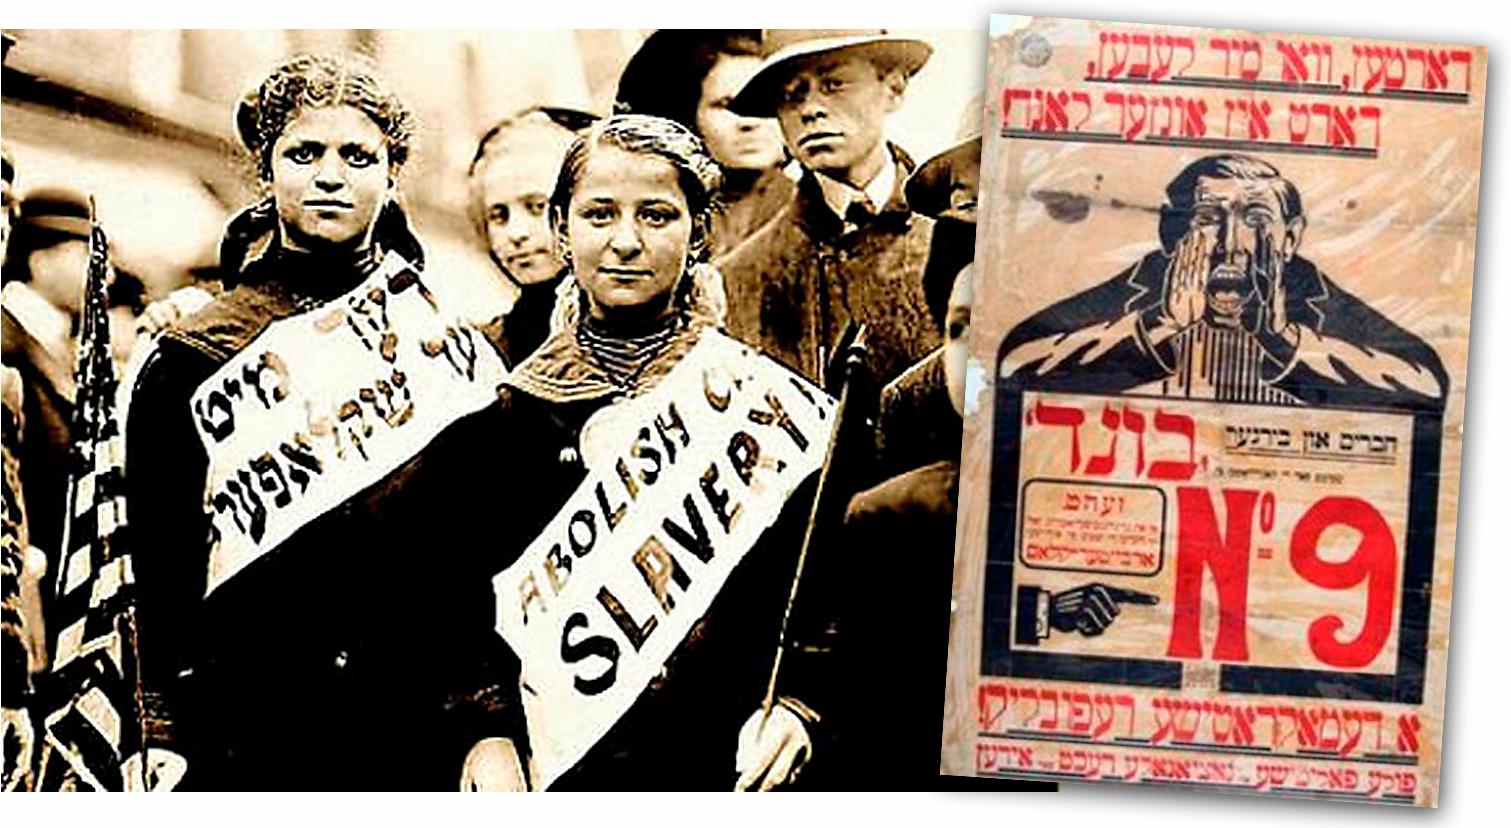 Tecken ur tiden Judisk demonstration med banners på engelska och jiddisch i New York 1909. Före kriget talade 11 miljoner jiddisch, i dag är det ett utdöende språk. Till höger en propaganda-affisch från det judiska kommunistförbundet Bund .